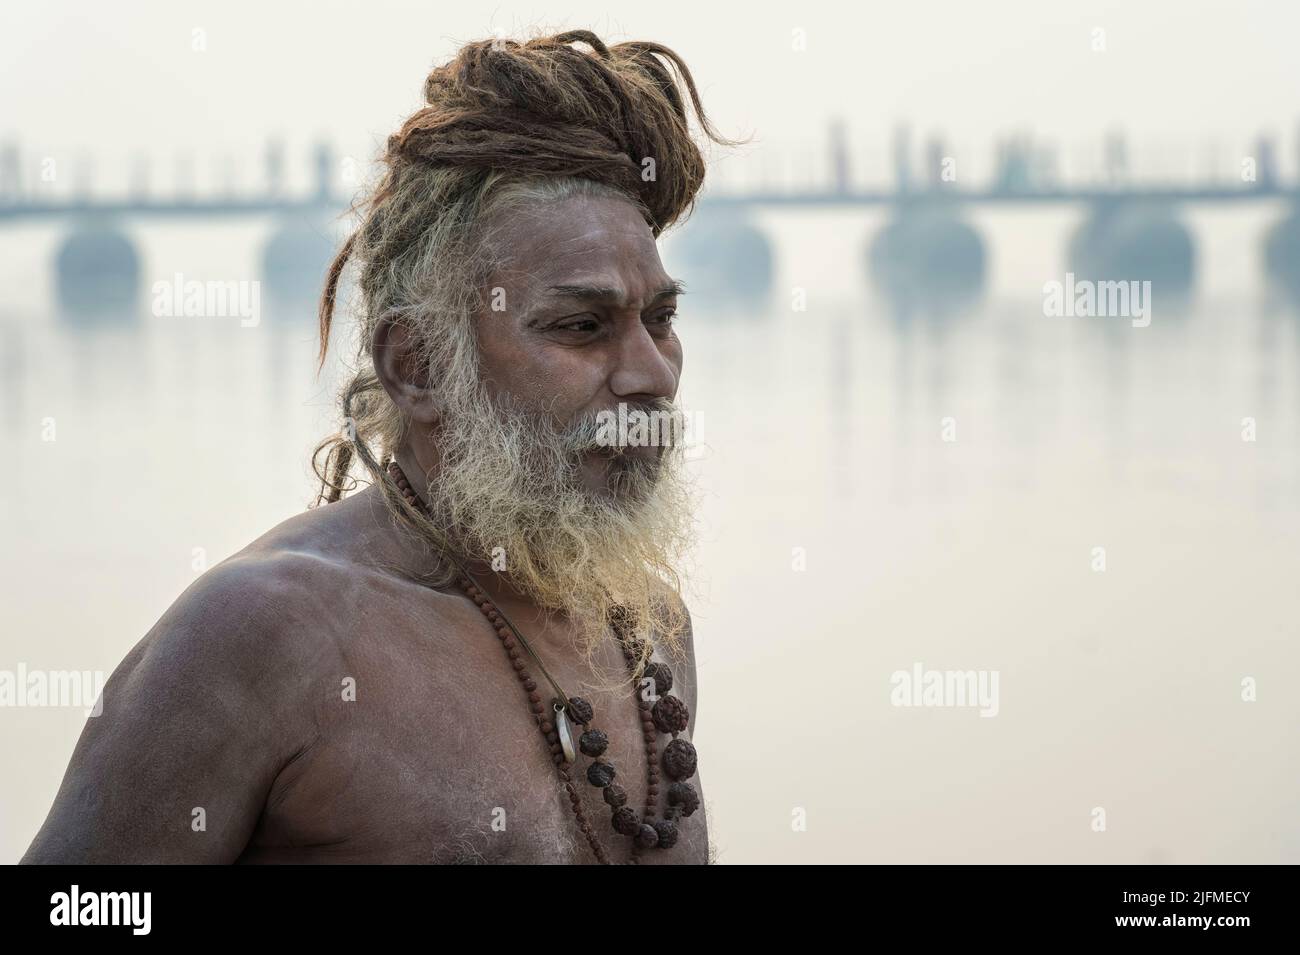 Baba de Roma en la ribera del Ganges, sólo para uso editorial, Allahabad Kumbh Mela, la reunión religiosa más grande del mundo, Uttar Pradesh, India Foto de stock